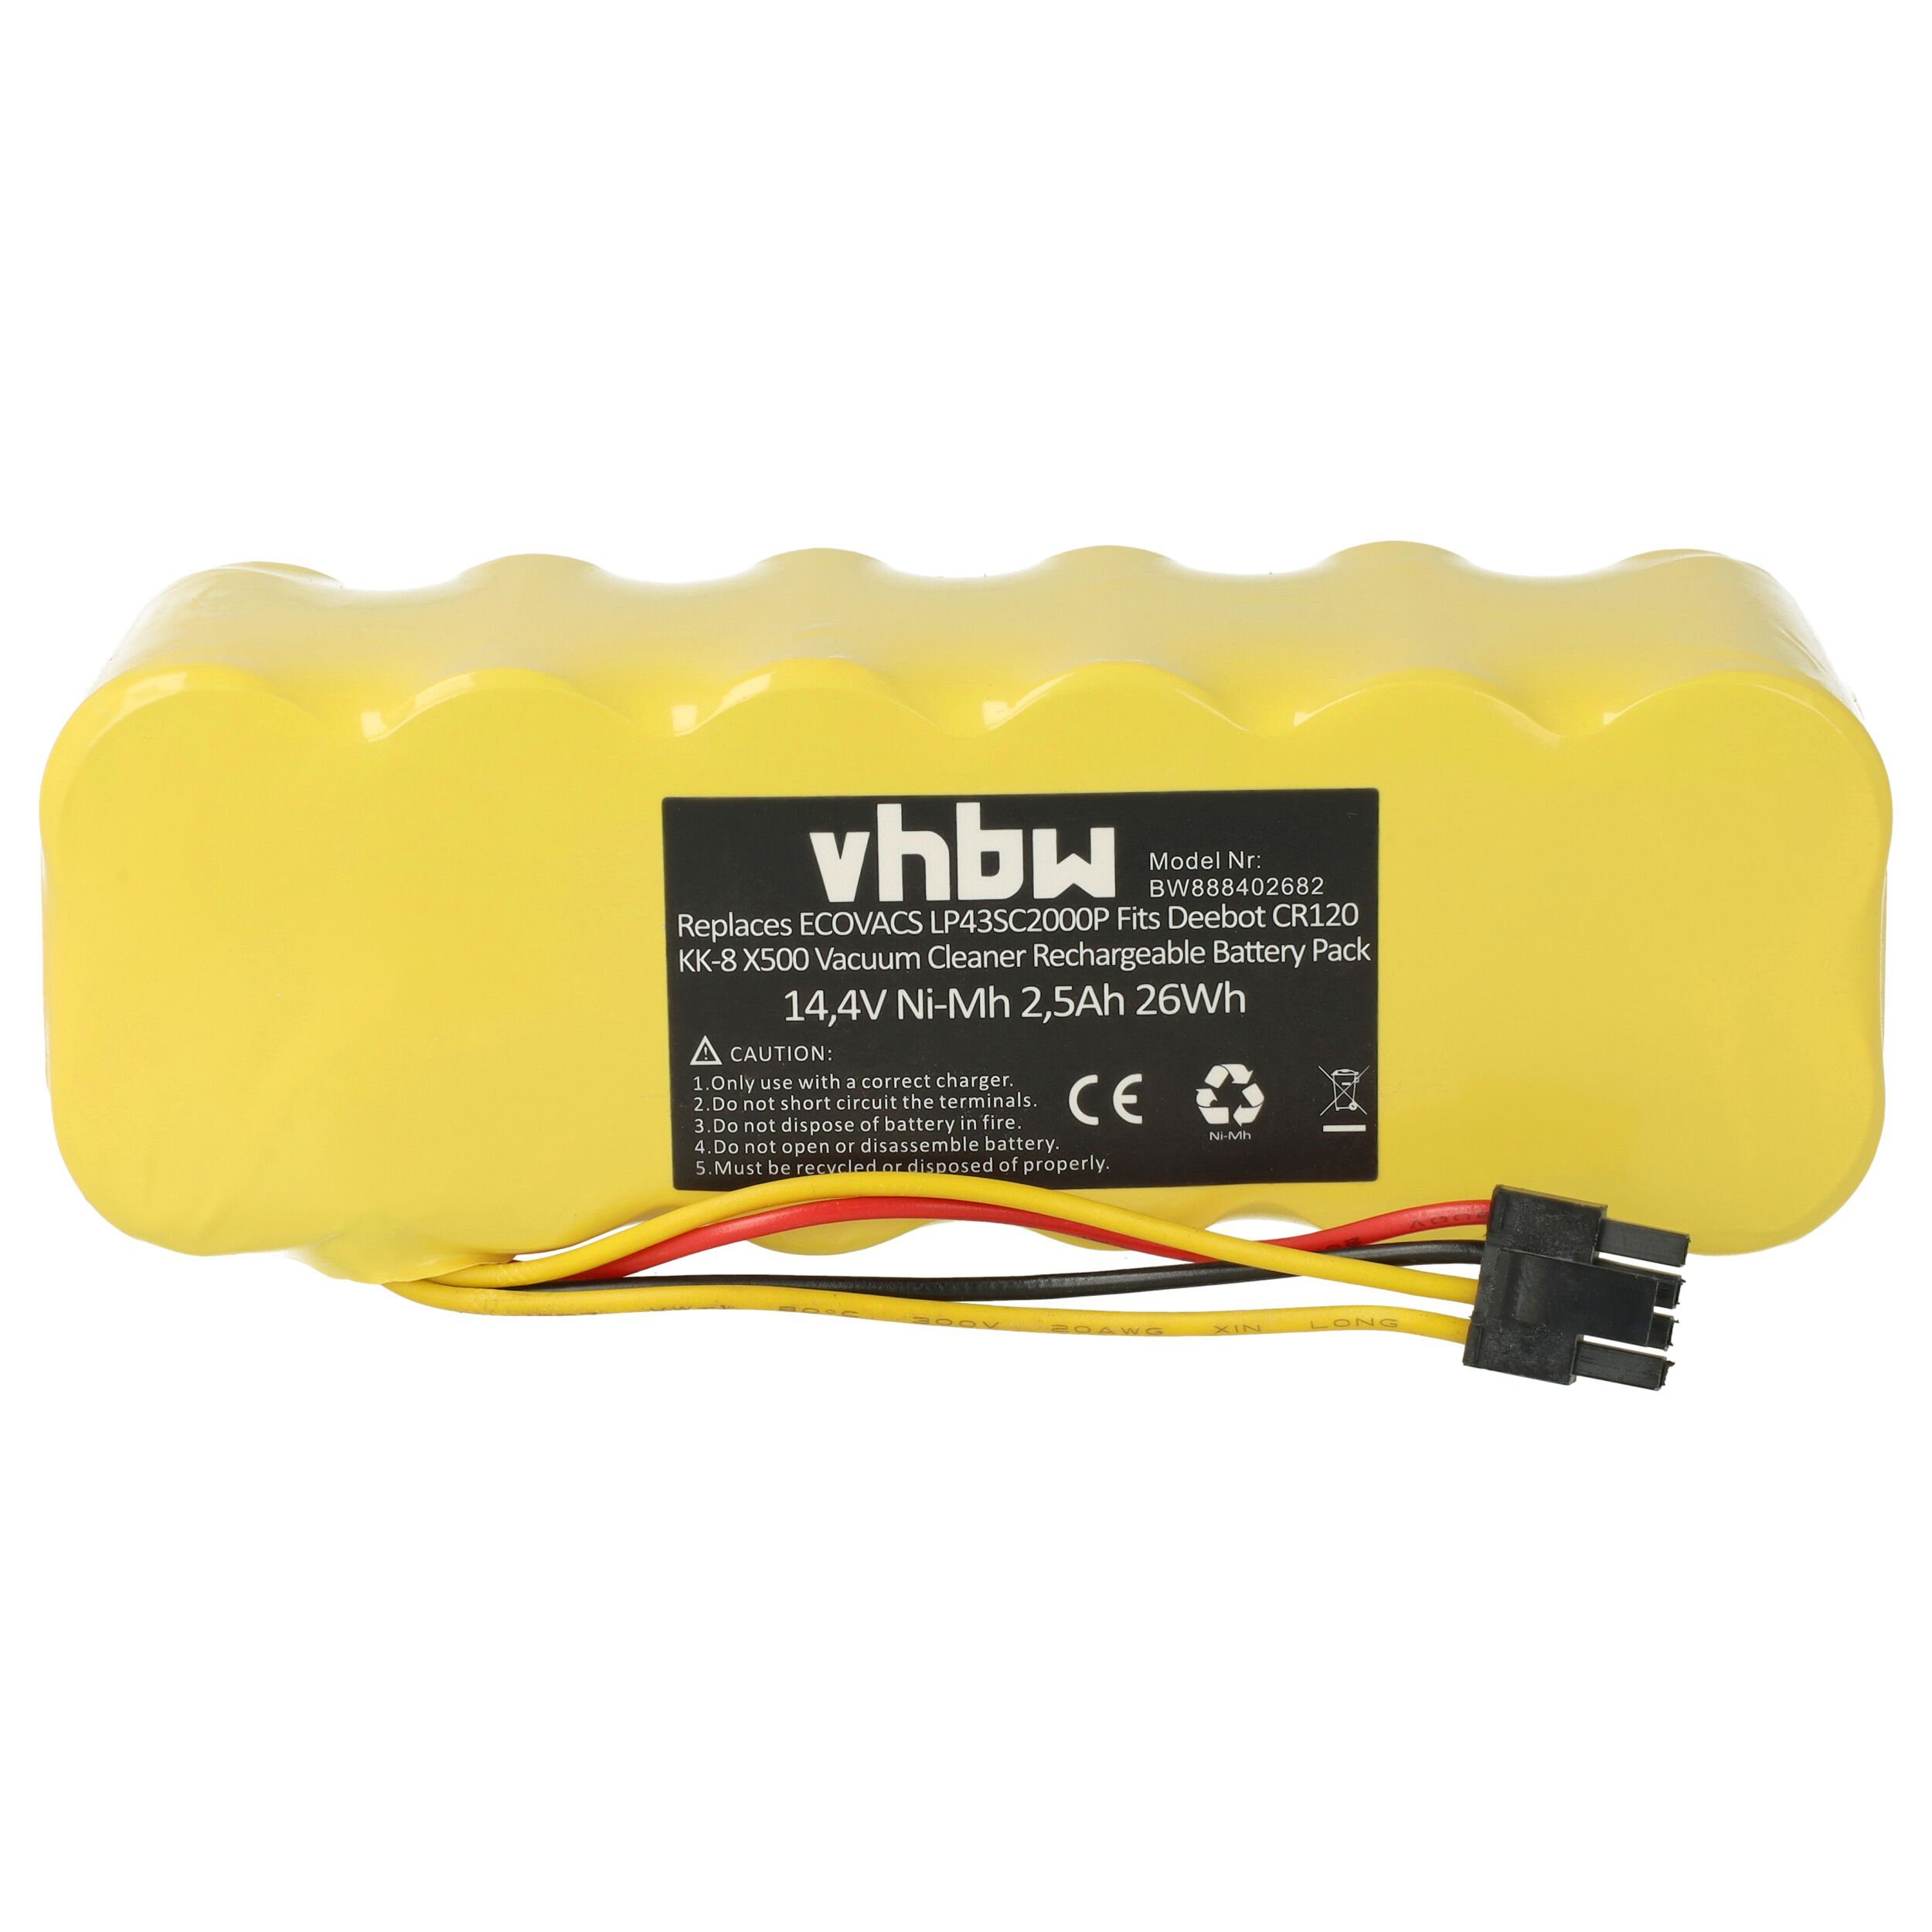 vhbw kompatibel mit Dibea X580, X500, DIBEA KK8, X600 Staubsauger-Akku NiMH 2500 mAh (14,4 V)